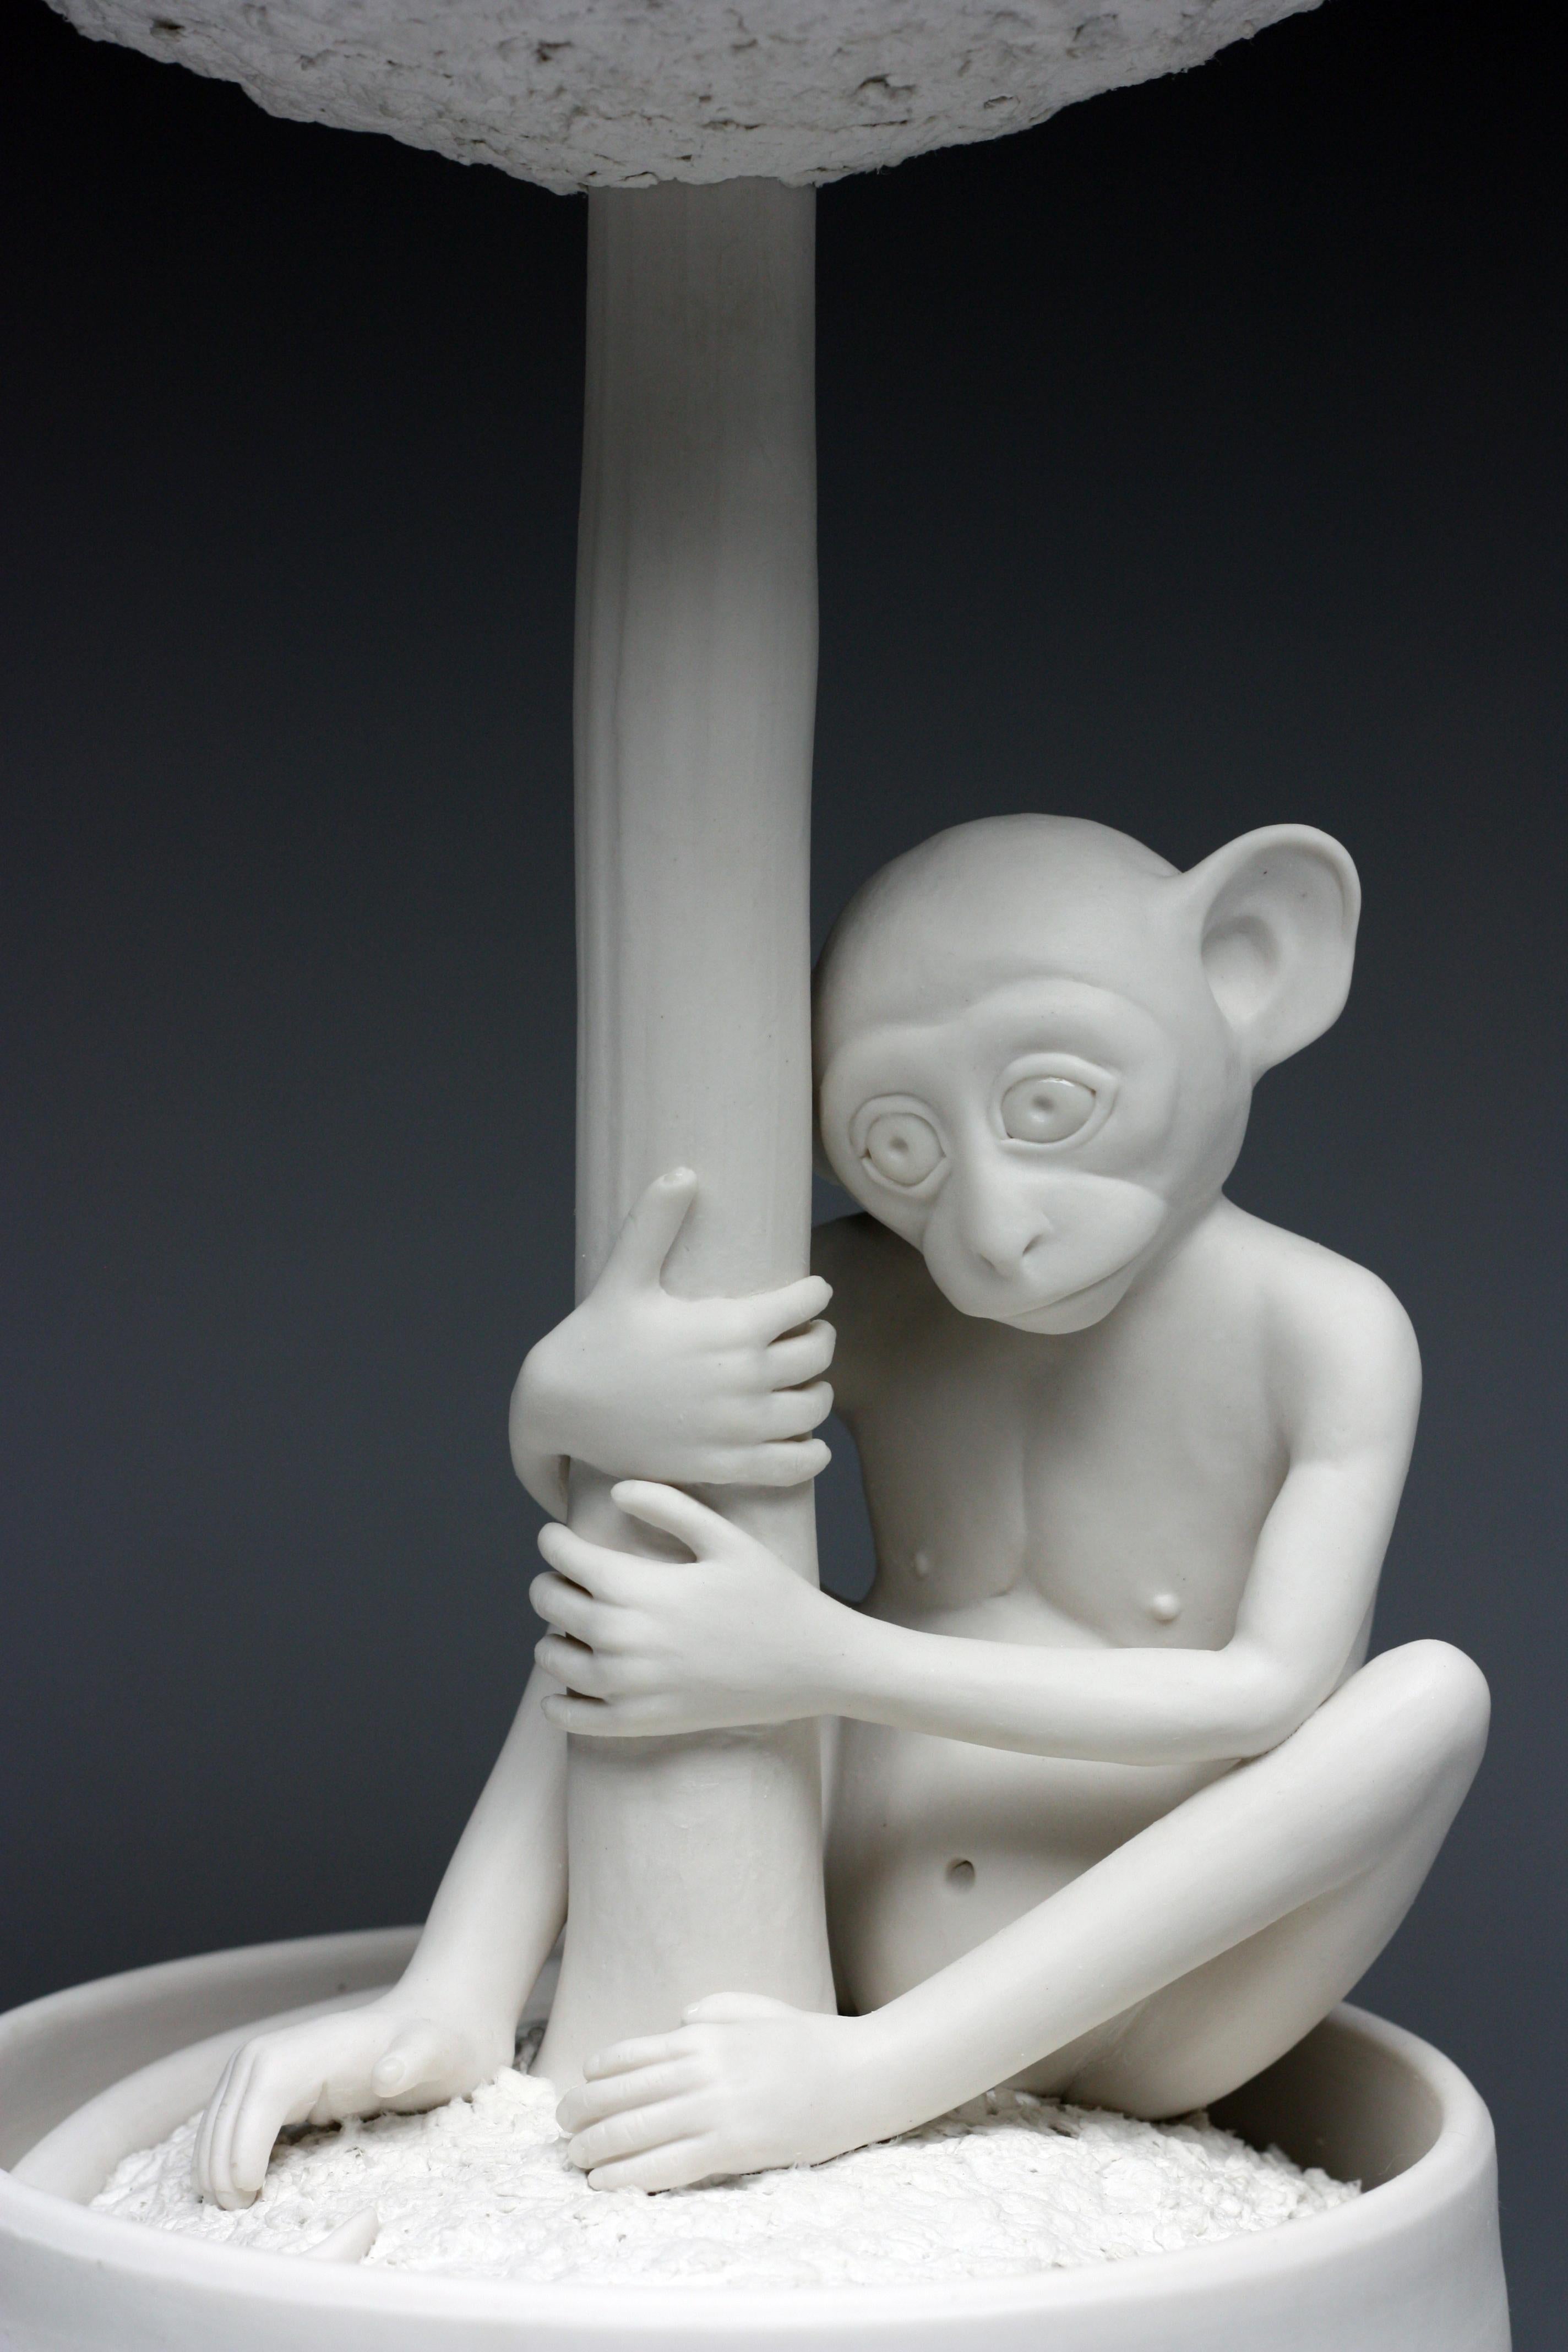 Esta obra de la artista neoyorquina Bethany Krull representa a un mono de porcelana blanca que se aferra a un árbol topiario en maceta de porcelana blanca con una copa bulbosa hecha de papel maché de archivo bellamente texturizado.  El mono está